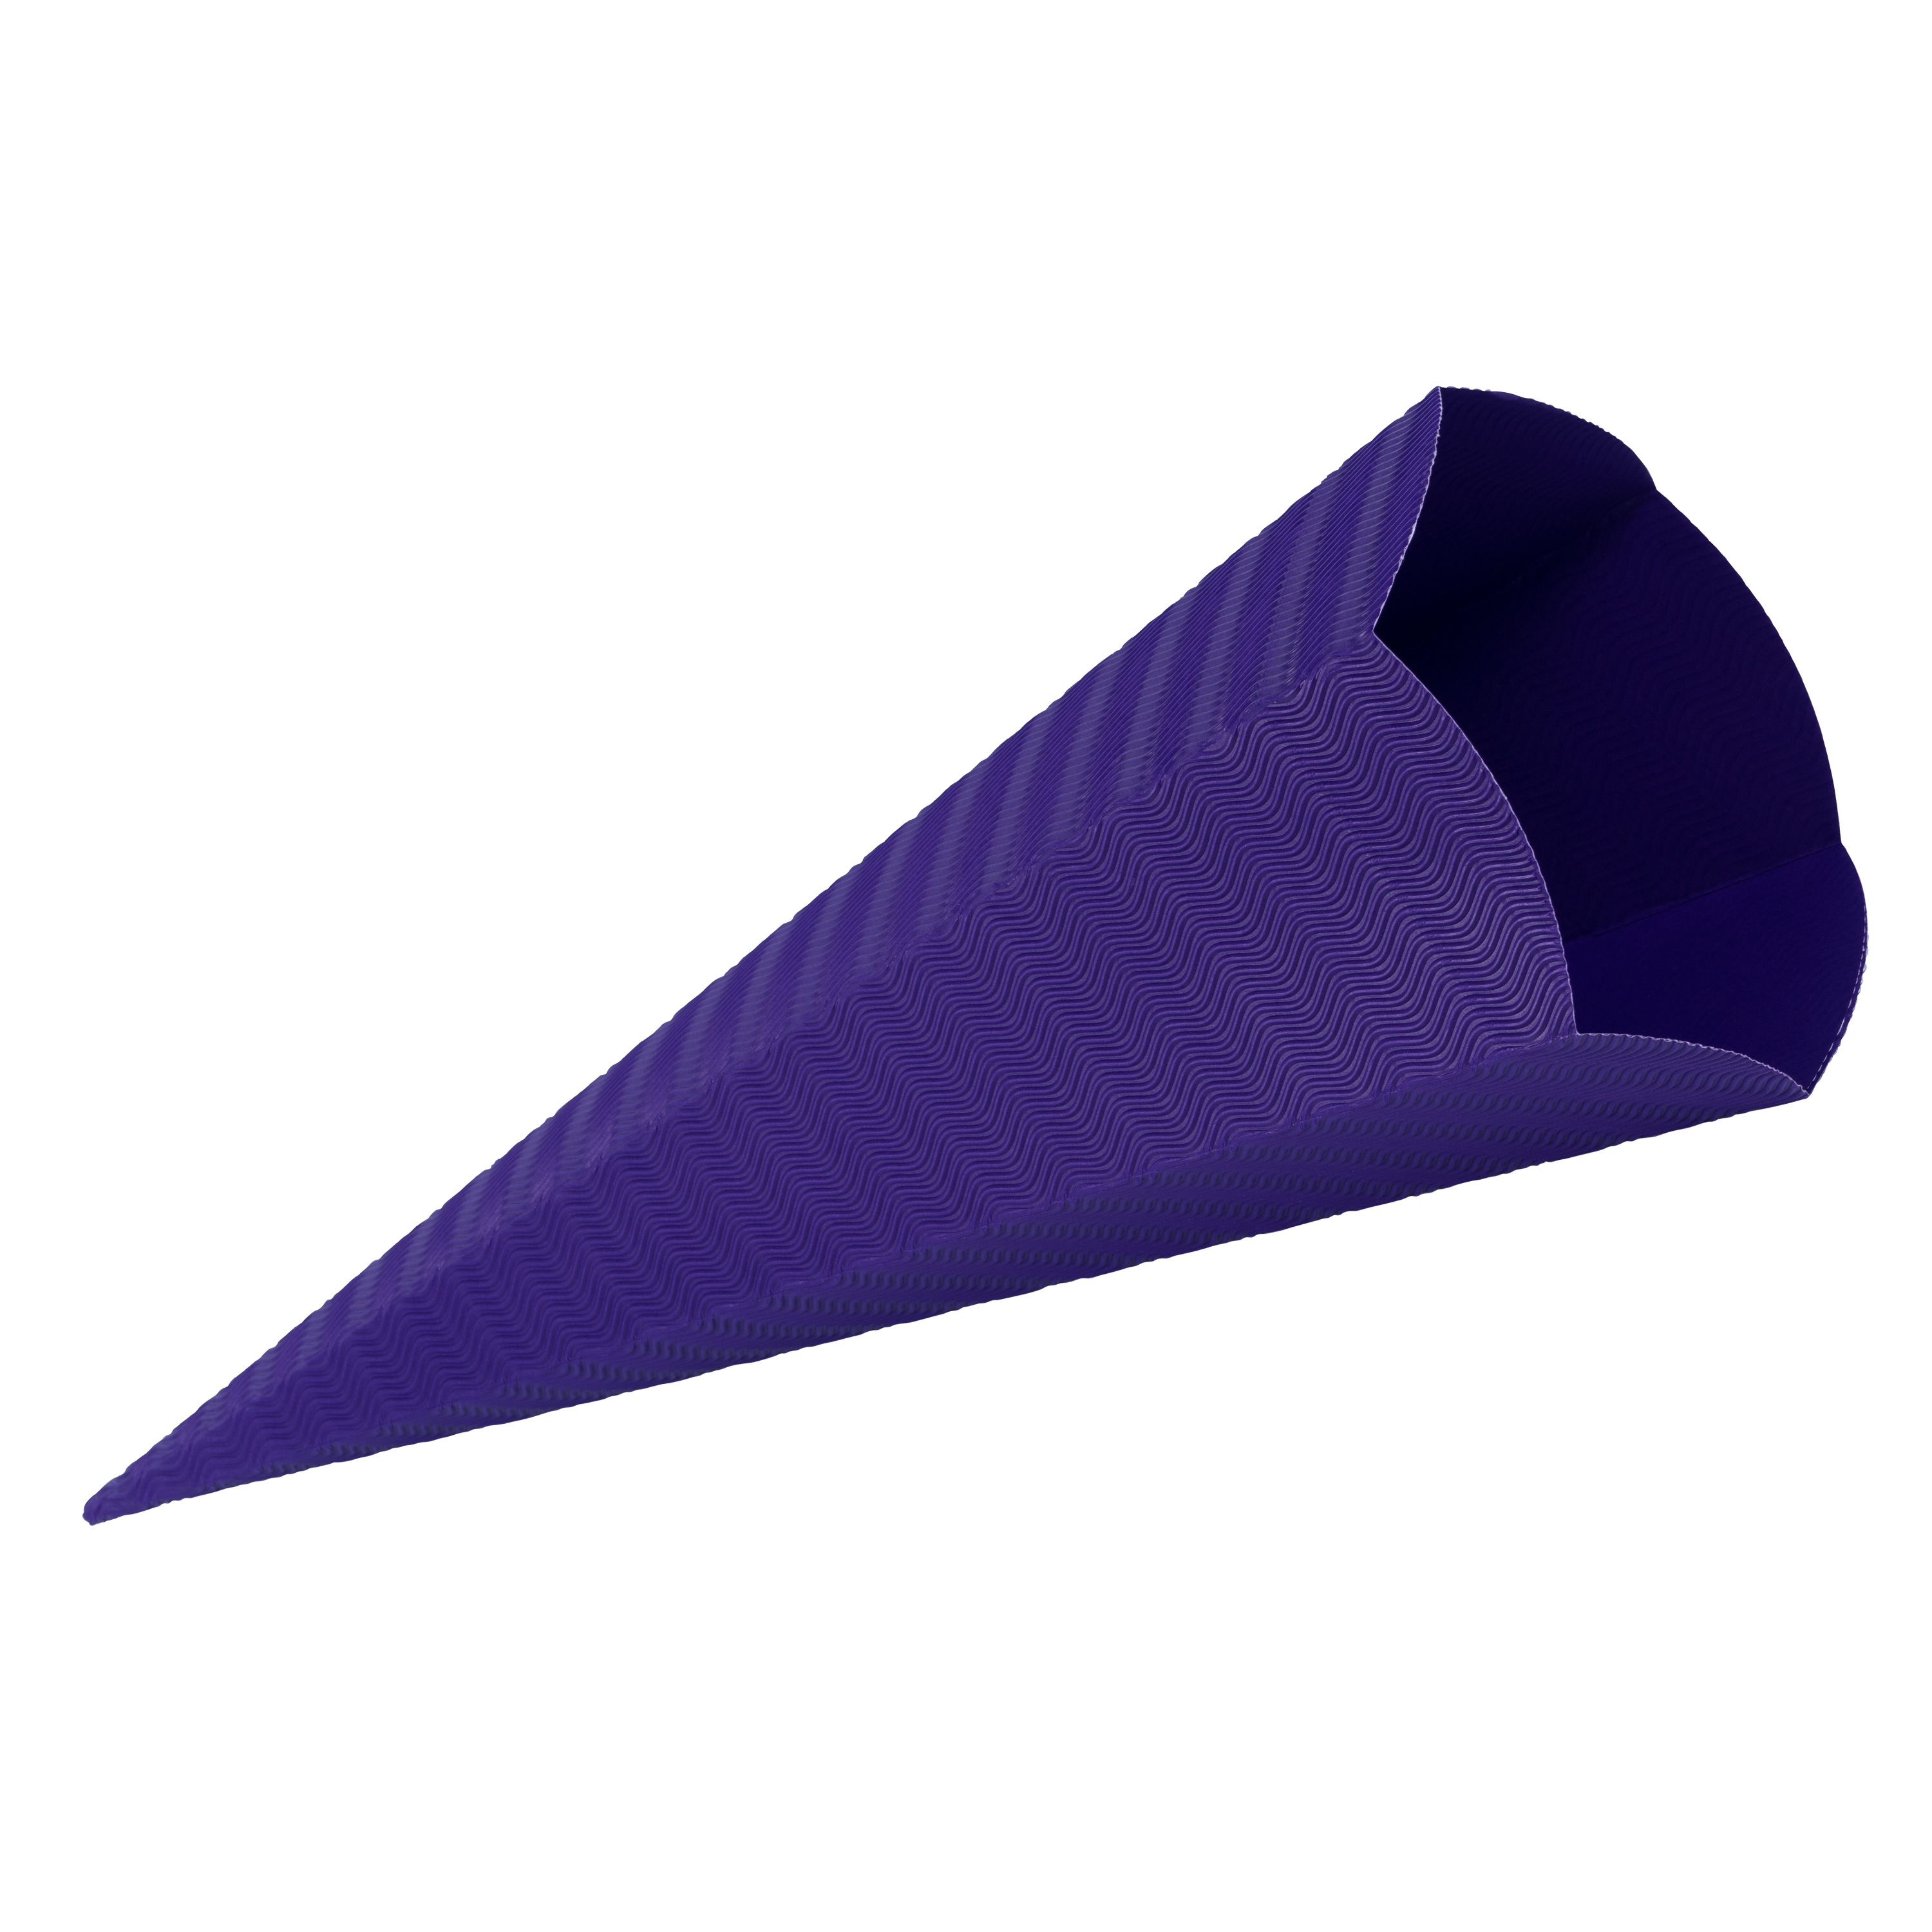 Schultüten-Rohling 3D-Wellpappe, 1 Stück, violett